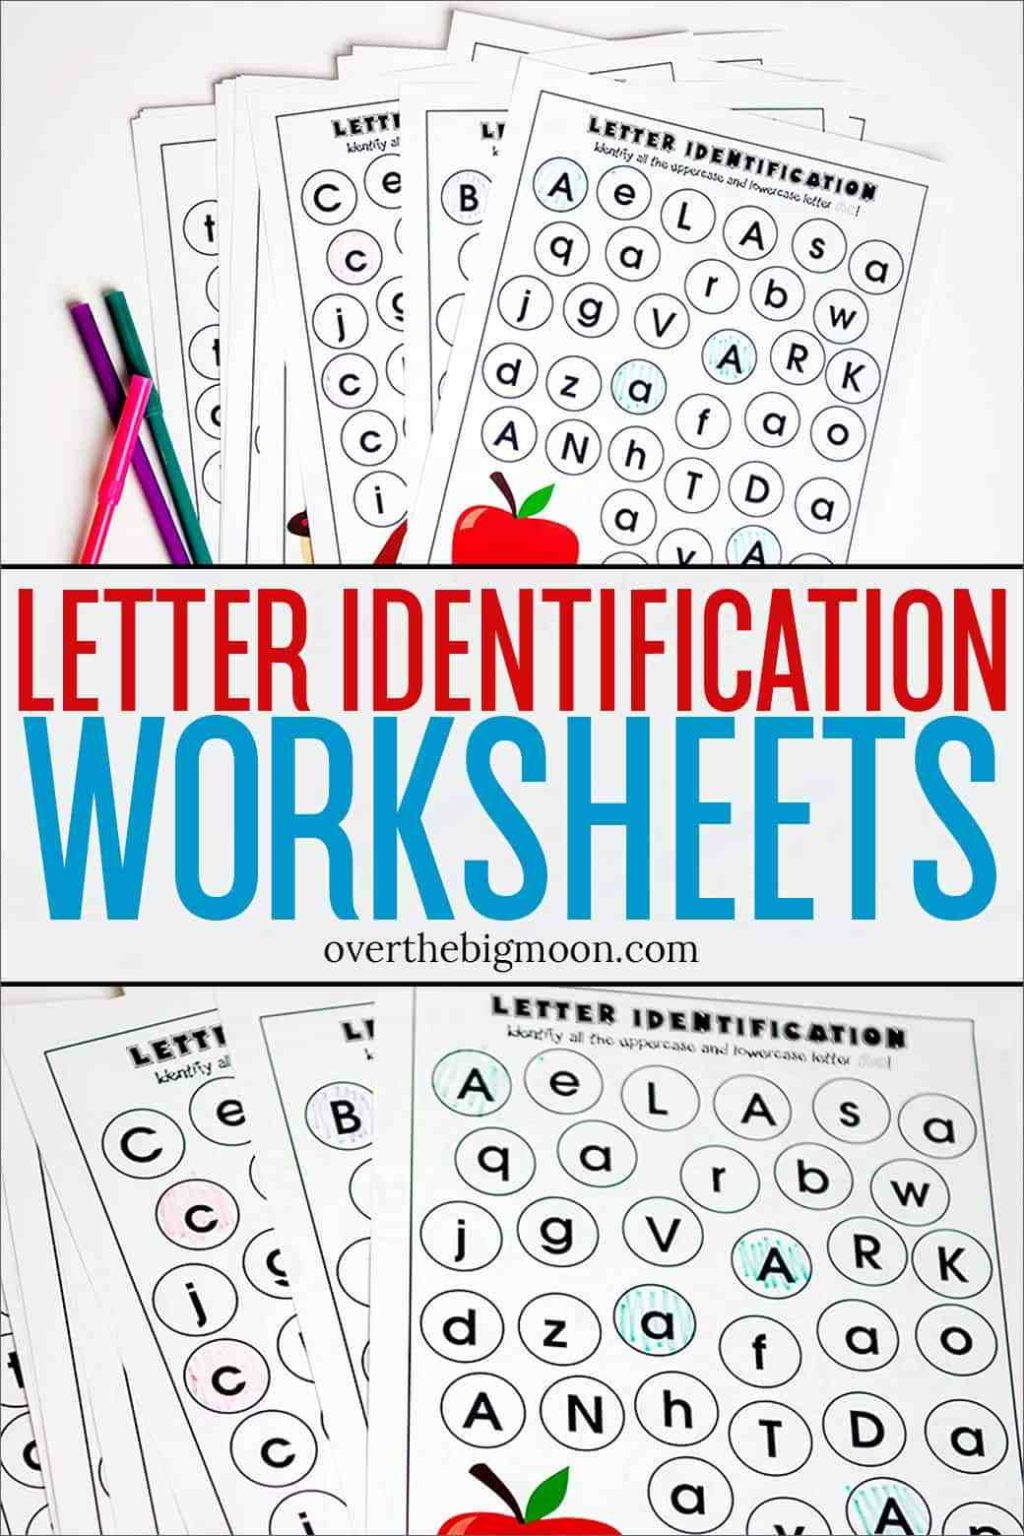 Worksheet ~ Letter Identification Worksheets Incredible with Letter L Worksheets Sparklebox